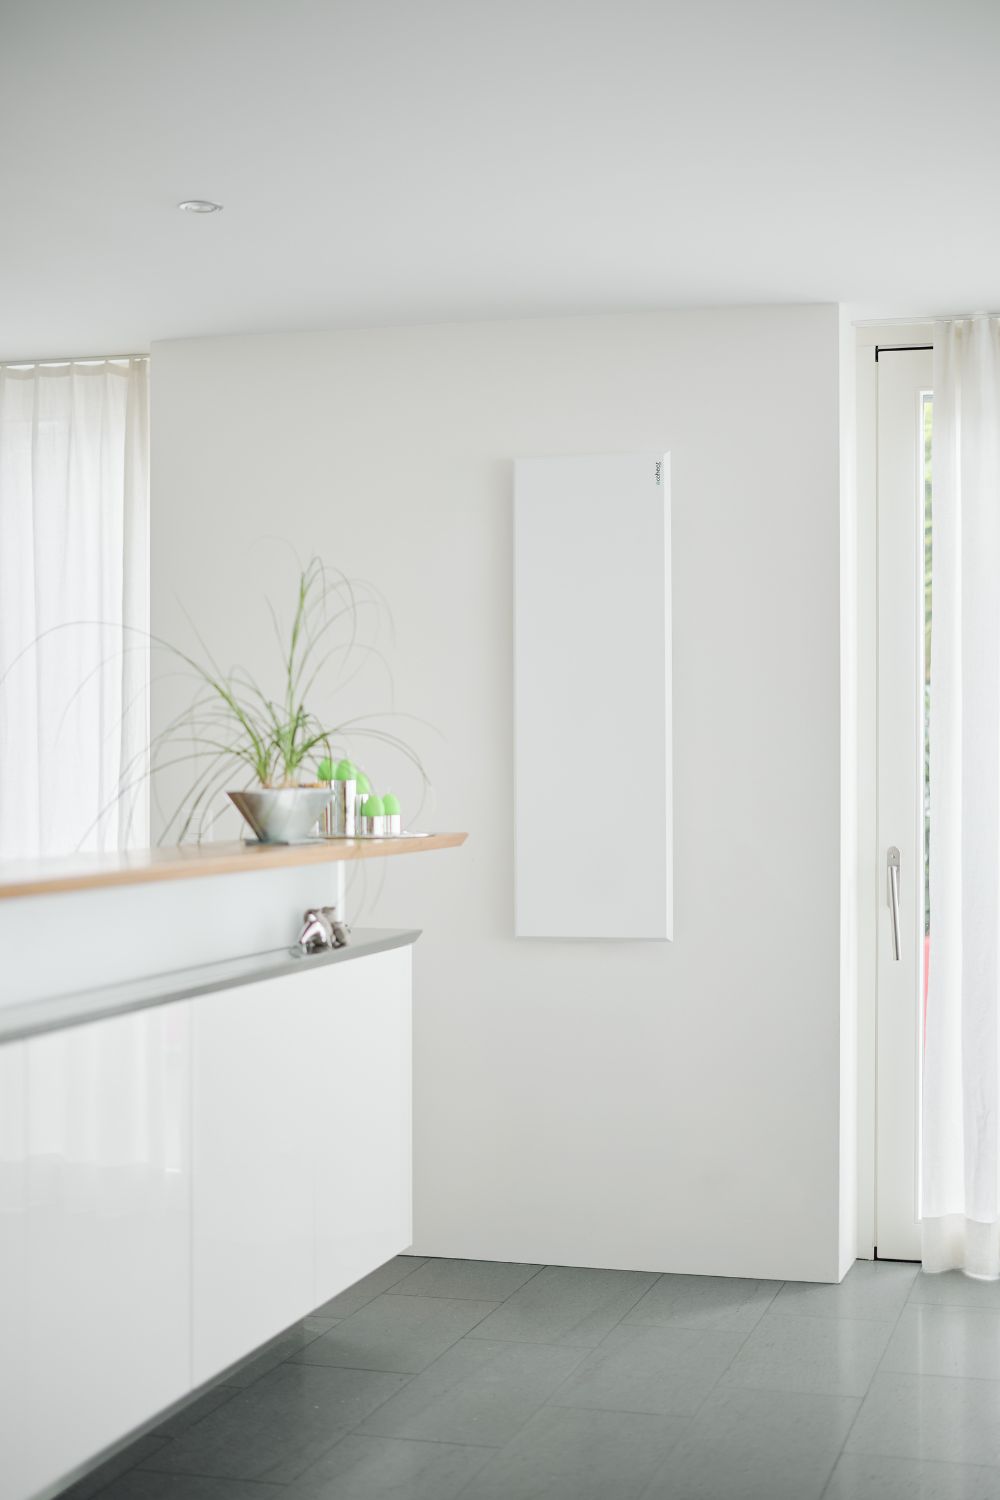 Eine ecoheat Classic-T Infrarotheizung ist an der Wand neben der Küchentheke im Wohnzimmer montiert.